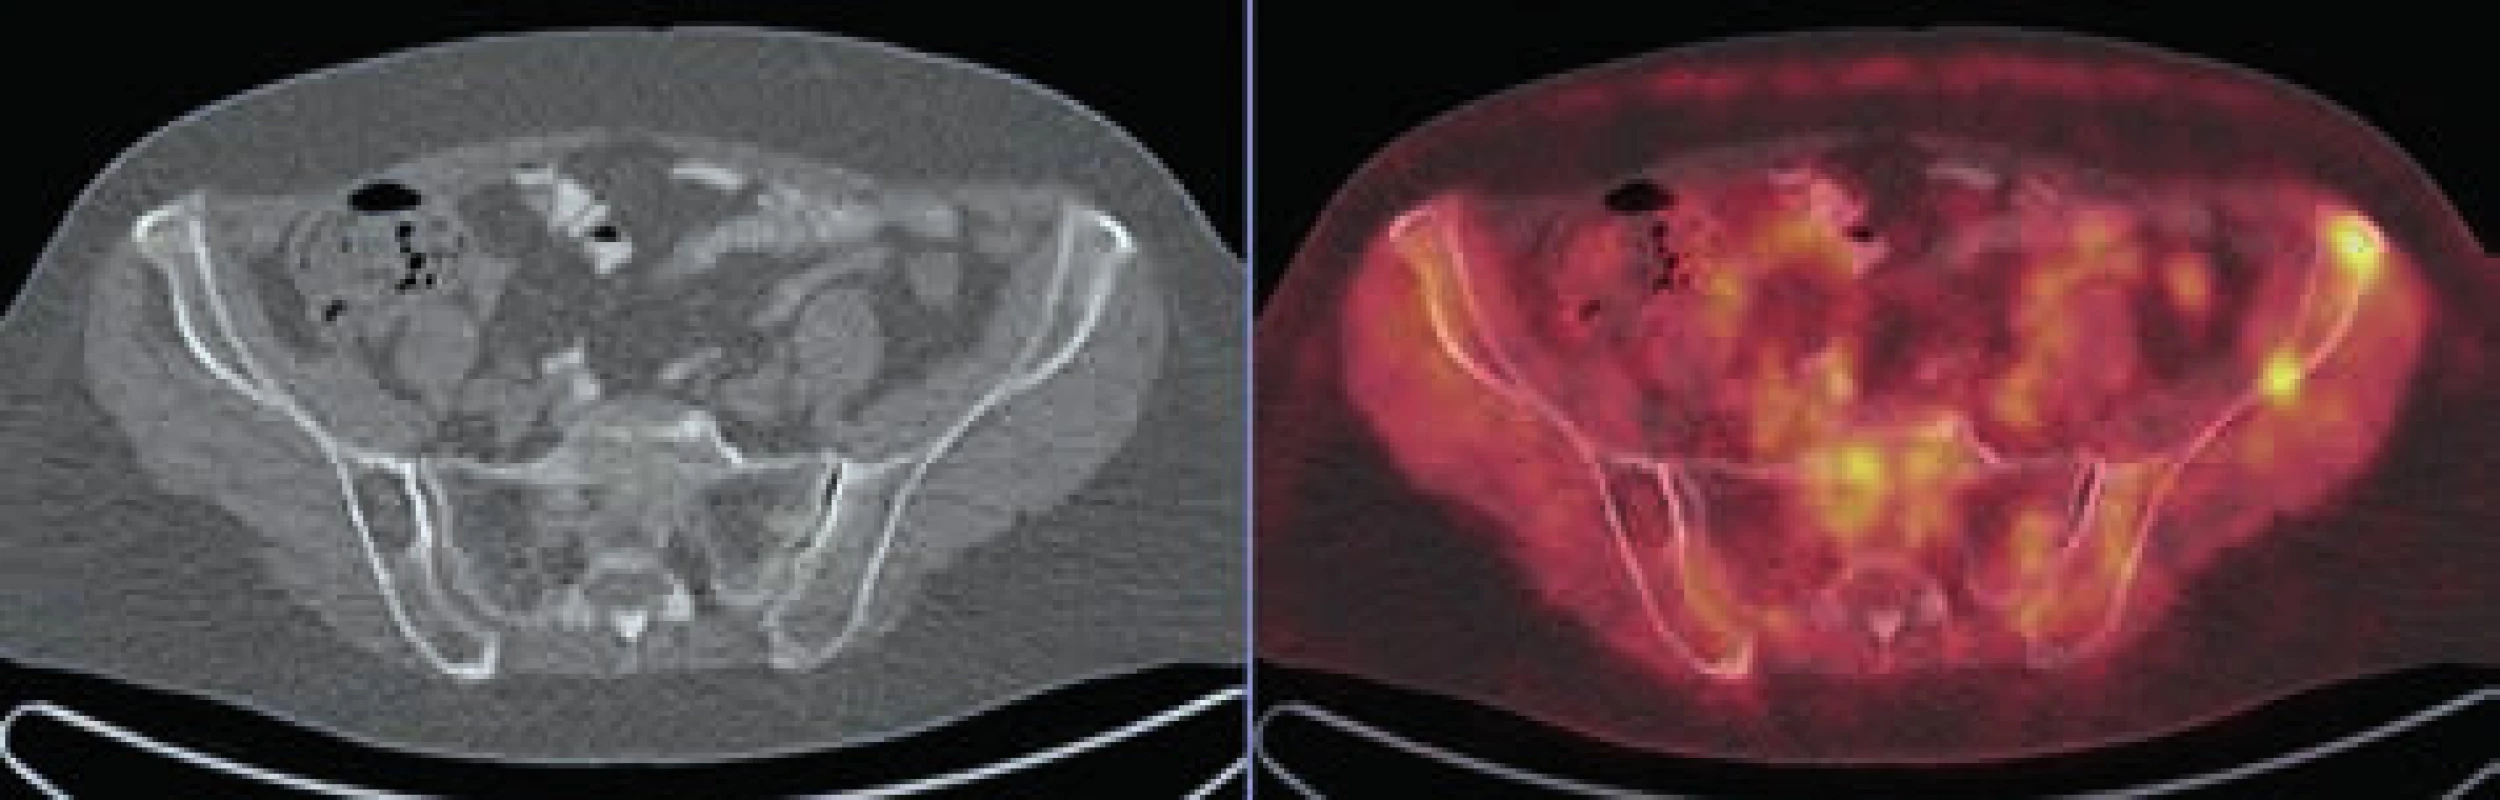 V levé lopatě kyčelní v LD CT obrazu evidentní osteolytická léze bez metabolického korelátu v PET obrazu, v pravé lopatě kyčelní naopak 2 drobná ložiska akumulace FDG bez jednoznačného korelátu v LD CT obrazu